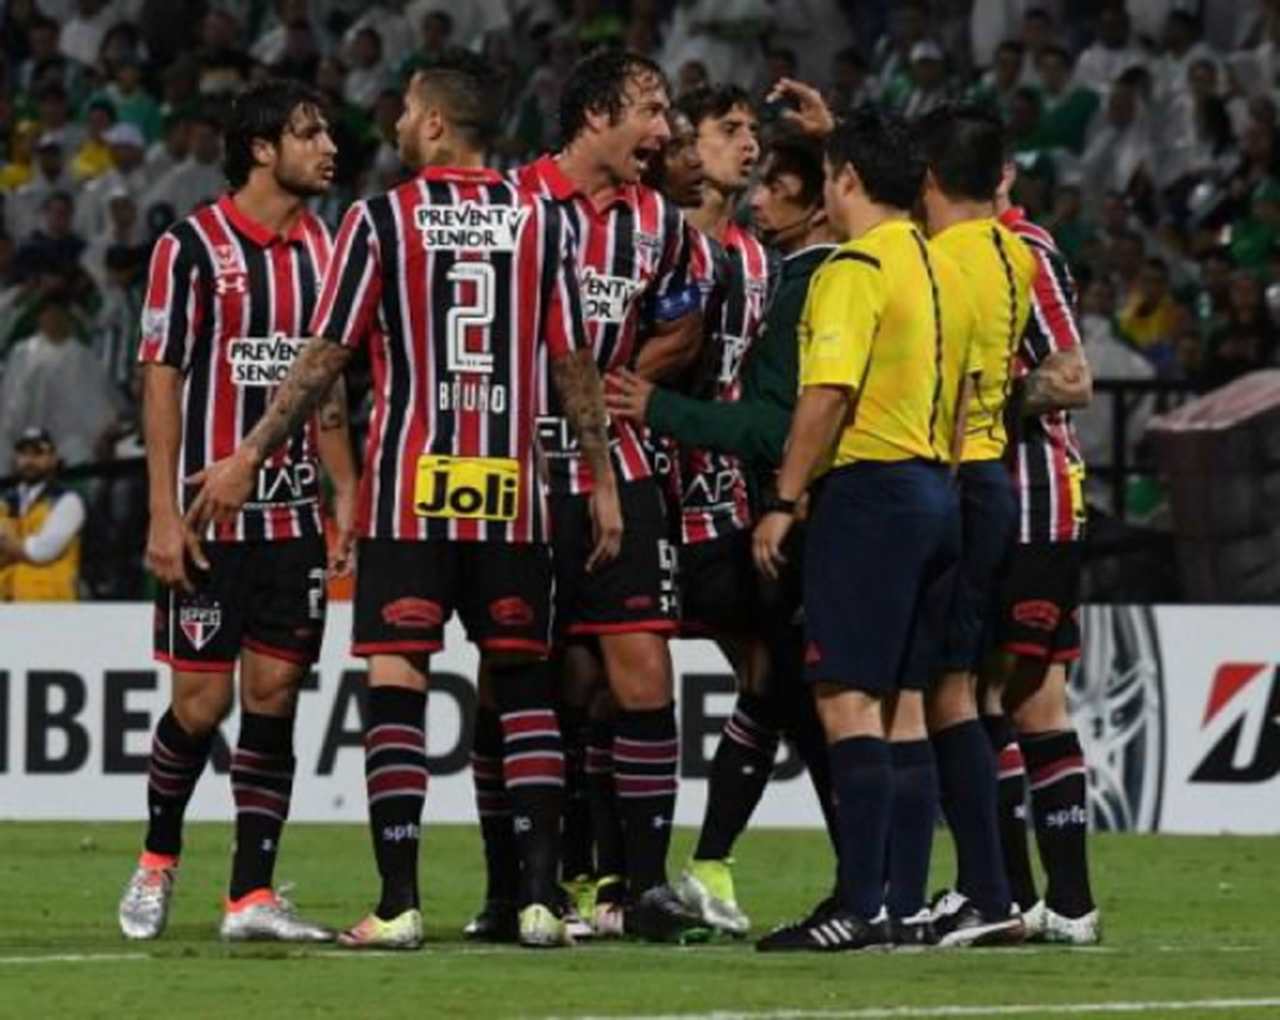 A camisa 2 de 2016, utilizada na semifinal da Libertadores, era listrada na frente e nas costas (sem o box para o número tão criticado pela torcida) e tinha a gola polo.